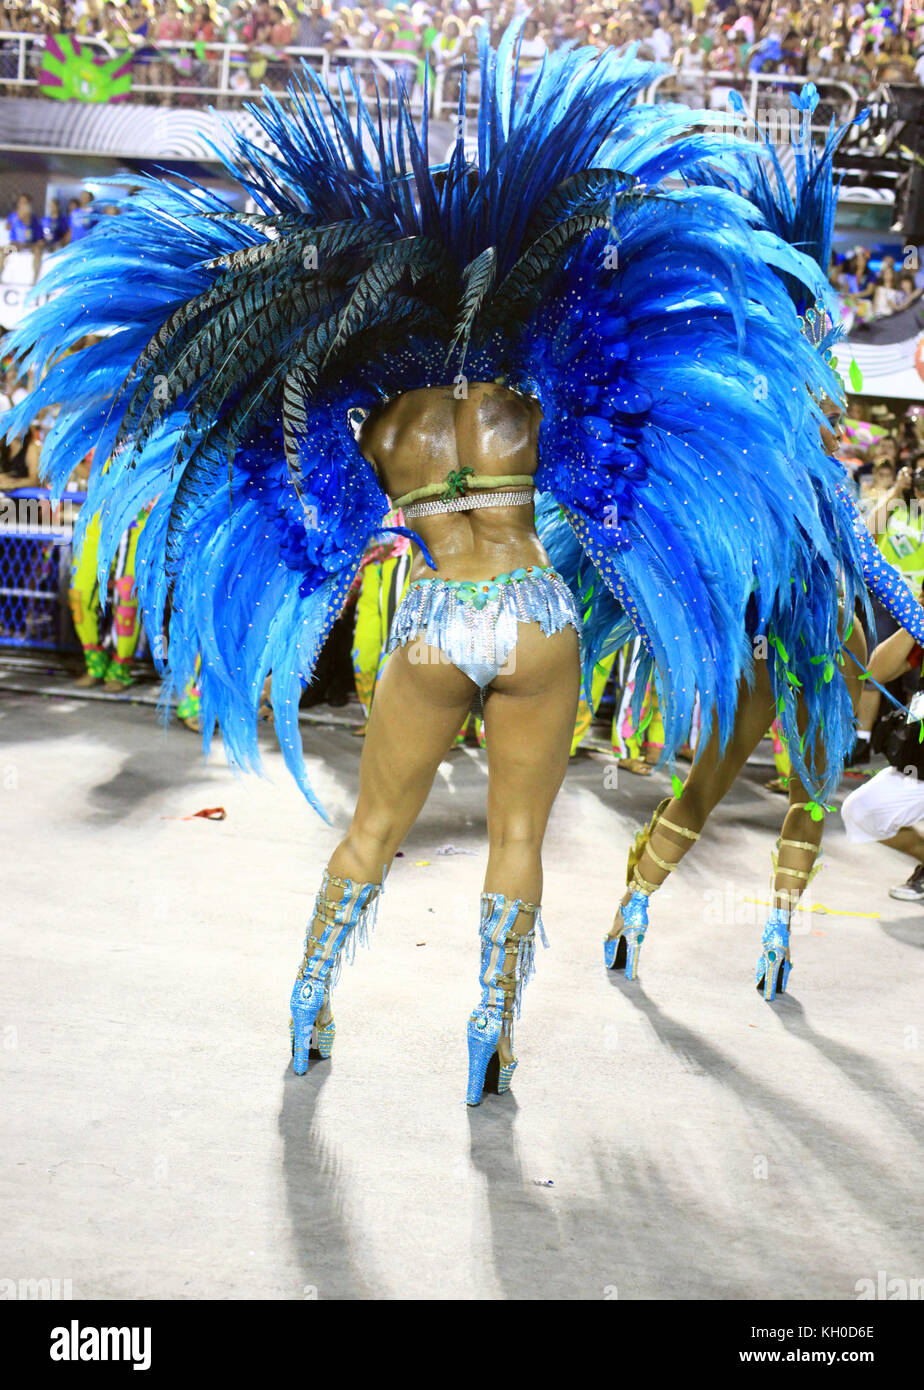 Es braucht viel Energie und Training, um ein großer Samba-Tänzer zu werden und am Sambodromo zu marschieren, wie diese Tänzerin der Mangueira Samba Schule. Brasilien 03.03 2014. Stockfoto